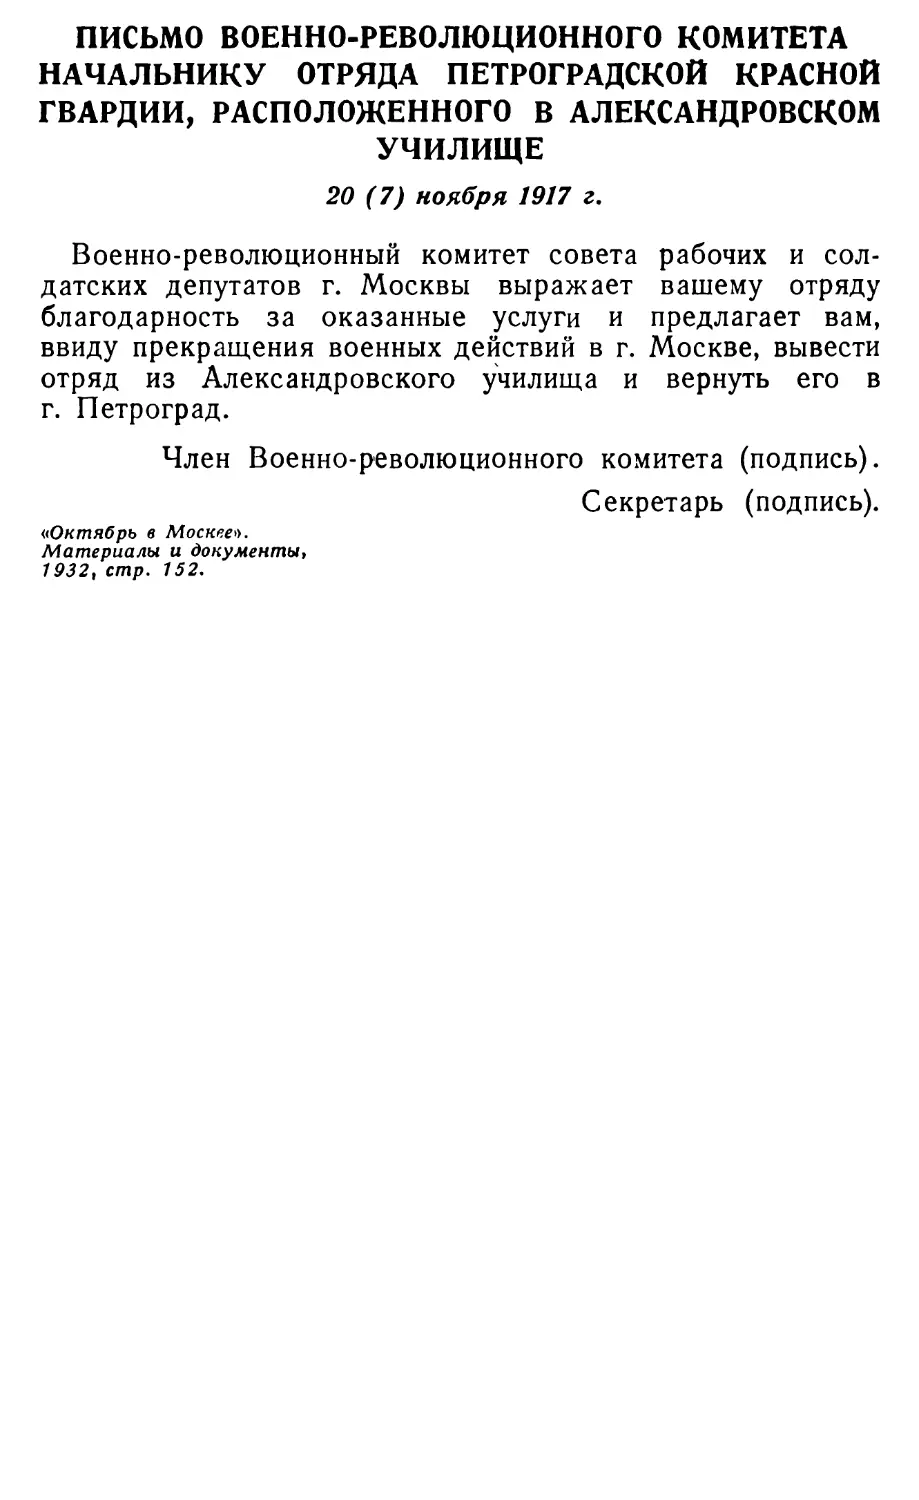 Письмо ВРК начальнику отряда Петроградской Красной гвардии, расположенного в Александровском училище